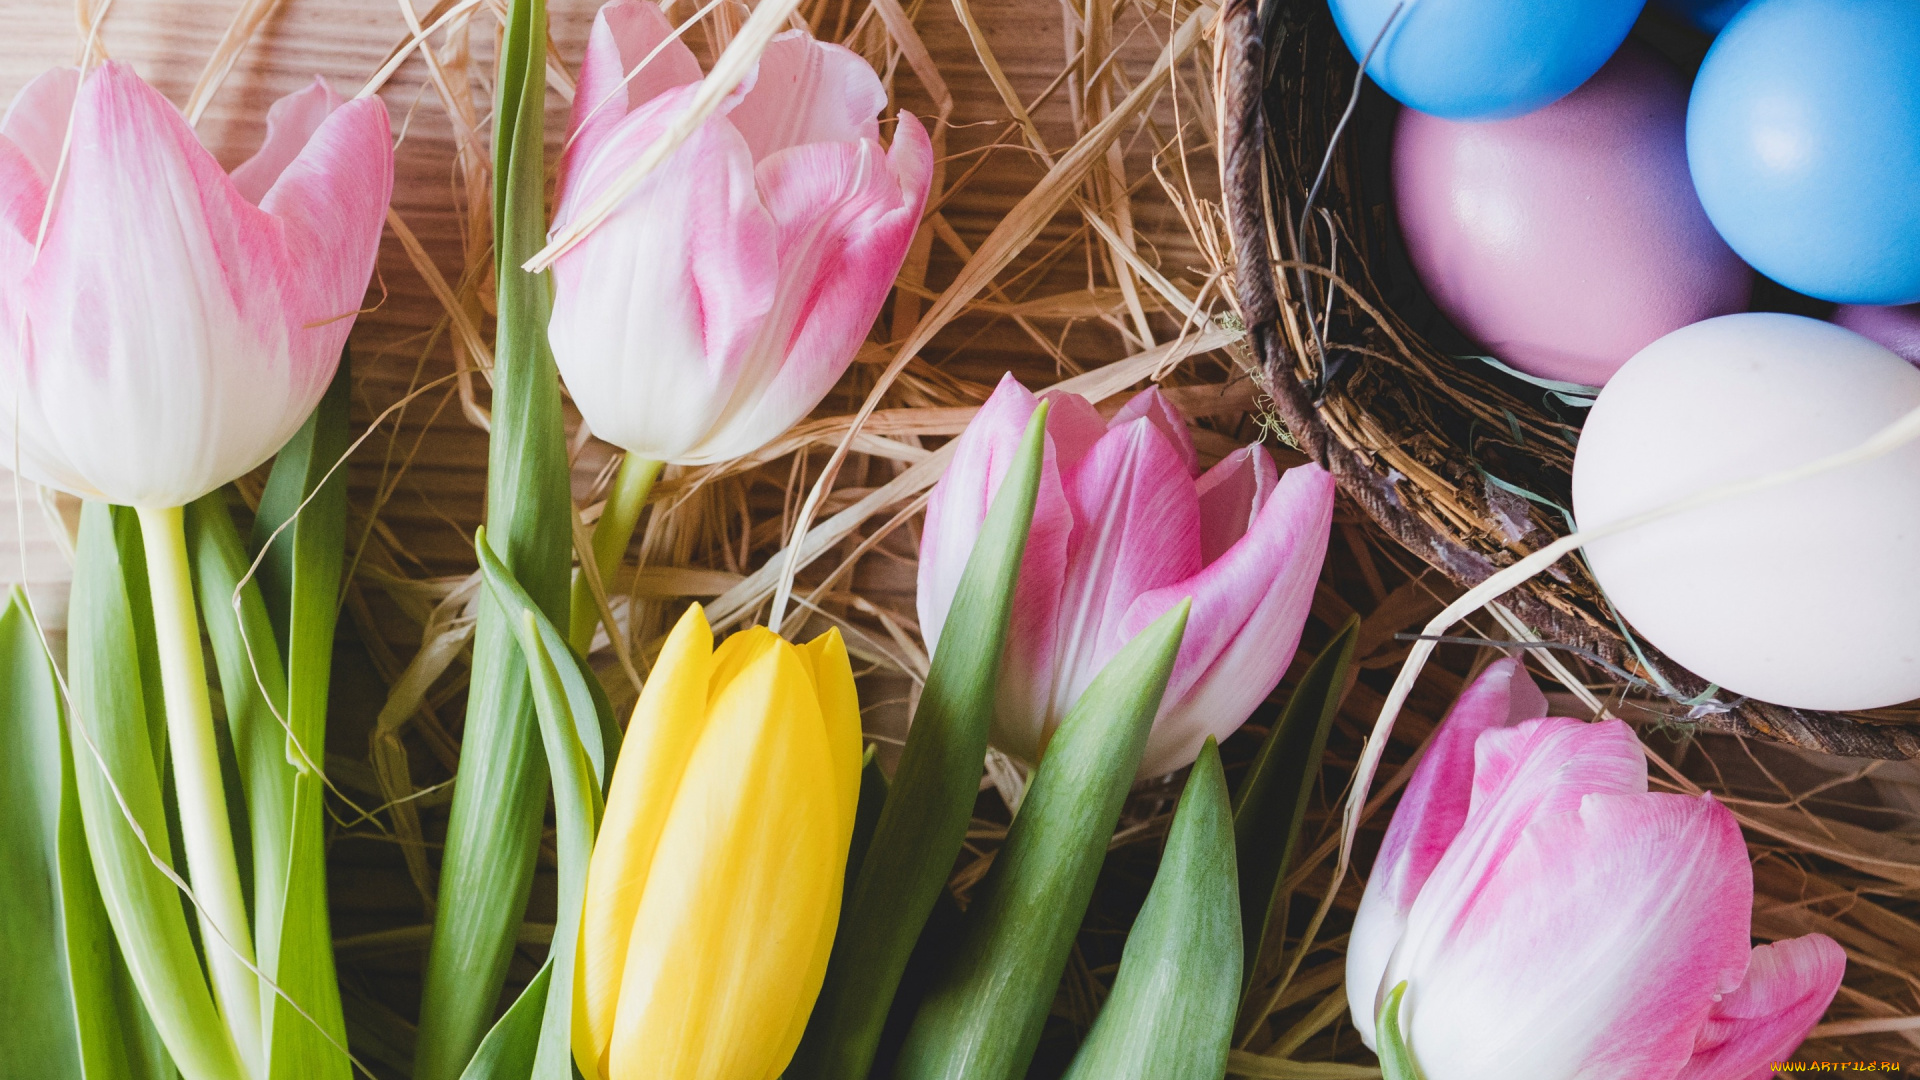 праздничные, пасха, pink, тюльпаны, tulips, tender, spring, easter, decoration, розовые, весна, flowers, happy, цветы, eggs, яйца, крашеные